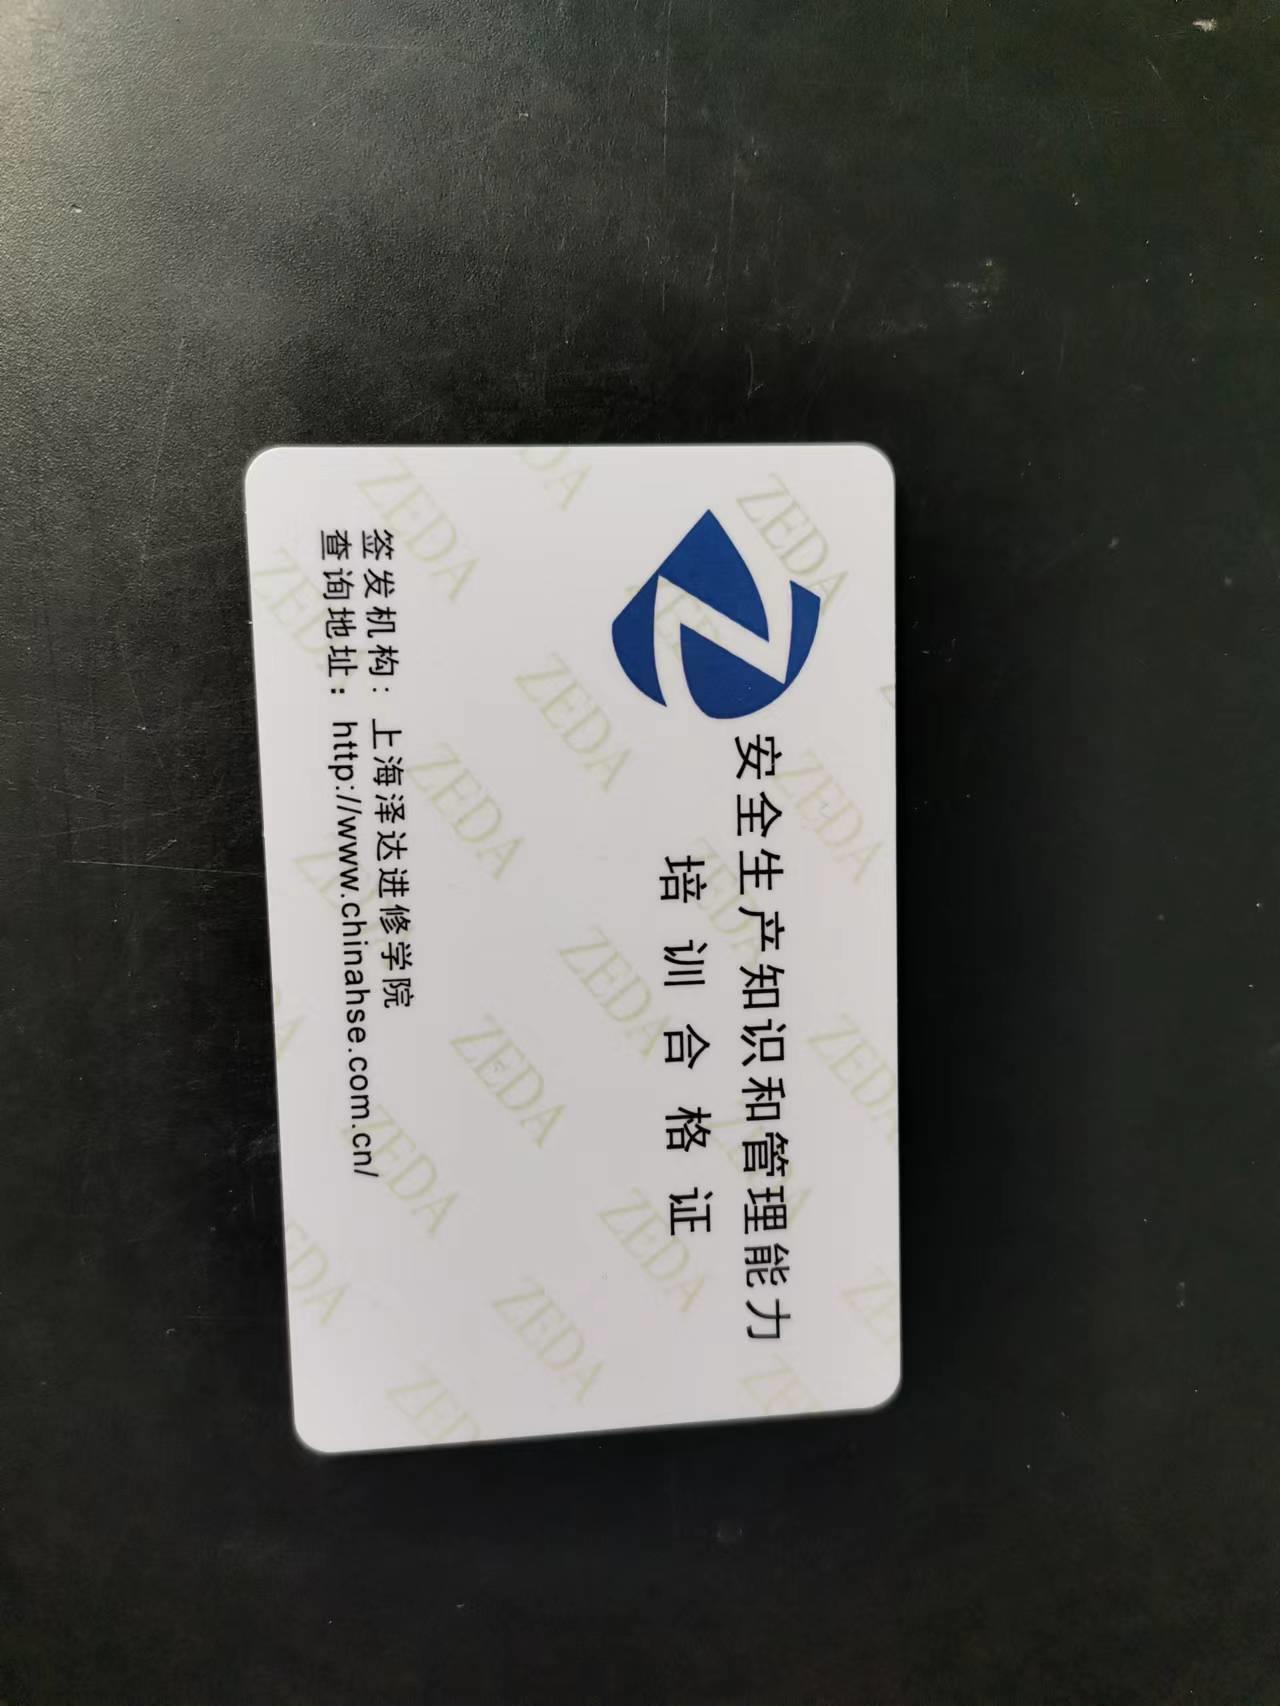 上海徐家汇危险化学品从业人员培训班啥地方有?？？